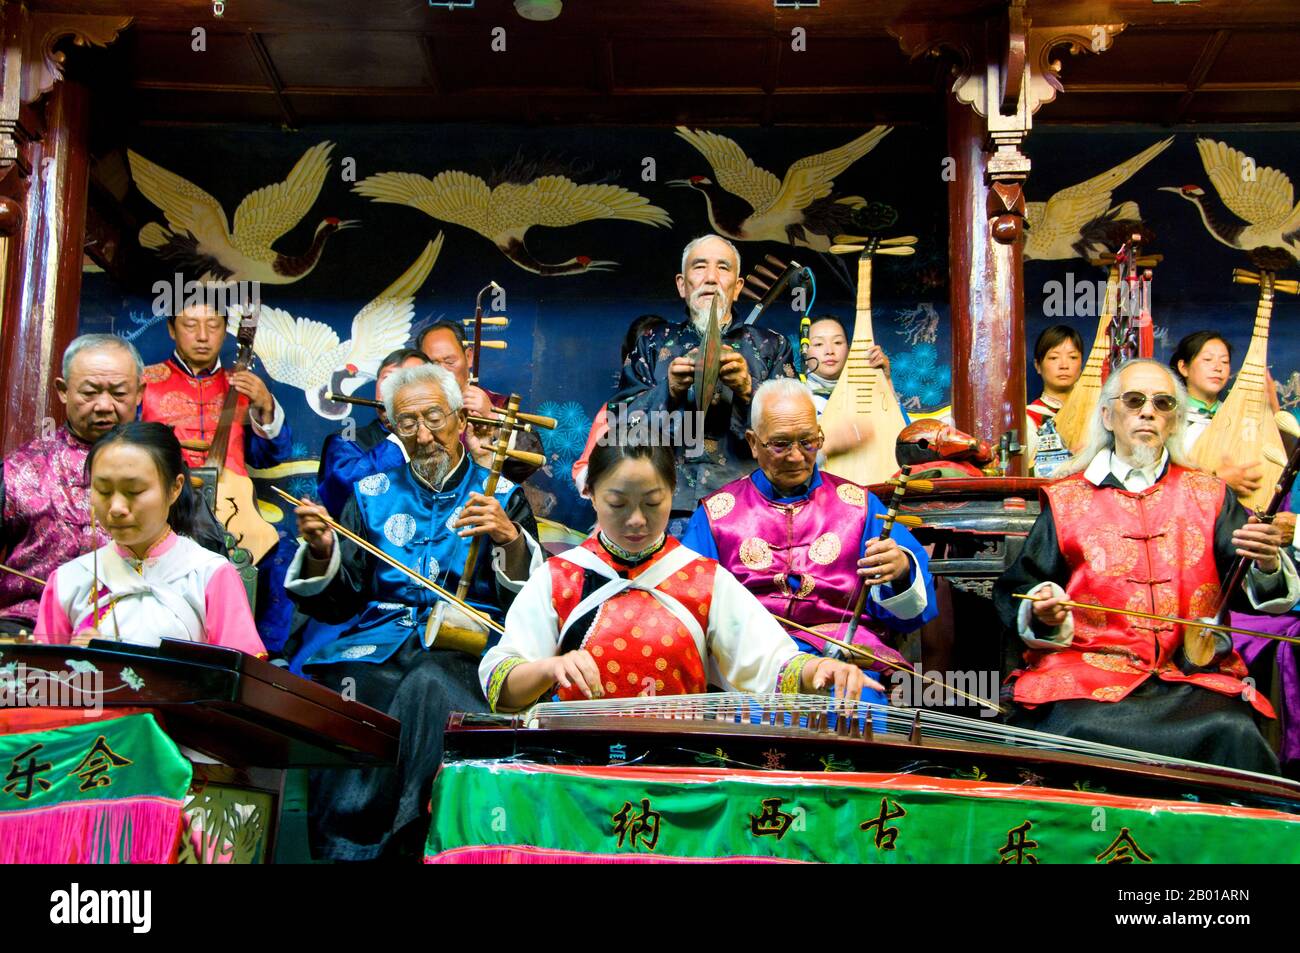 Cina: Orchestra folk di Naxi (Nakhi), Sala dell'Orchestra di Naxi, Città Vecchia di Lijiang, Provincia di Yunnan. La musica Naxi ha 500 anni e con la sua miscela di testi letterari, argomenti poetici e stili musicali delle dinastie Tang, Song e Yuan, così come alcune influenze tibetane, ha sviluppato il suo stile e i suoi tratti unici. Ci sono tre stili principali: Baisha, Dongjing e Huangjing, tutti utilizzando strumenti tradizionali cinesi. I Naxi o Nakhi sono un gruppo etnico che vive ai piedi delle colline dell'Himalaya nella parte nord-occidentale della provincia di Yunnan. Foto Stock